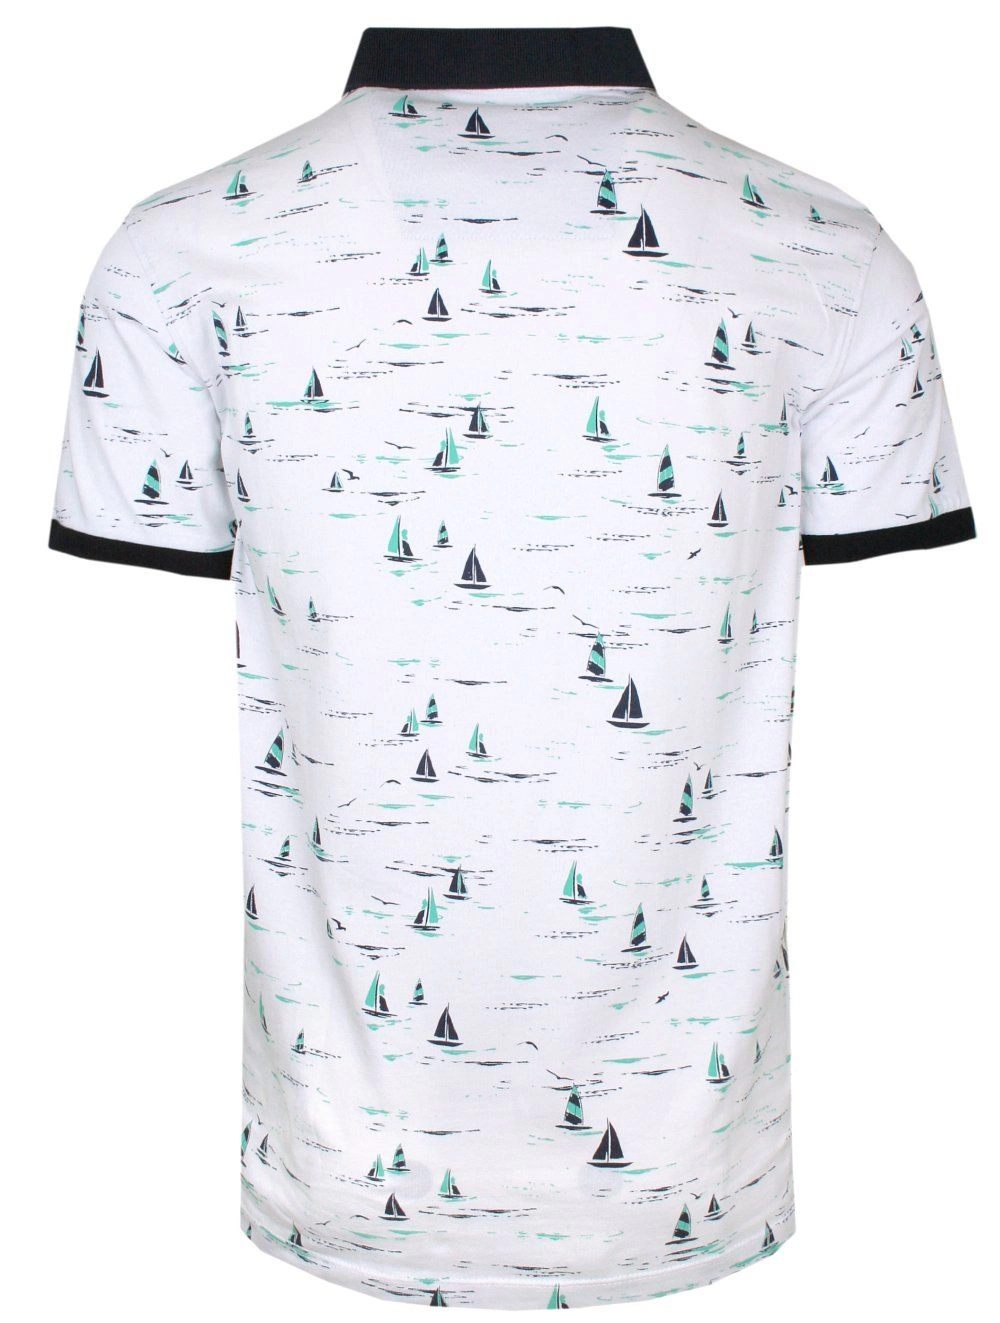 Koszulka POLO, Biała w Zielone Żaglówki, Męska, Krótki Rękaw, T-shirt 